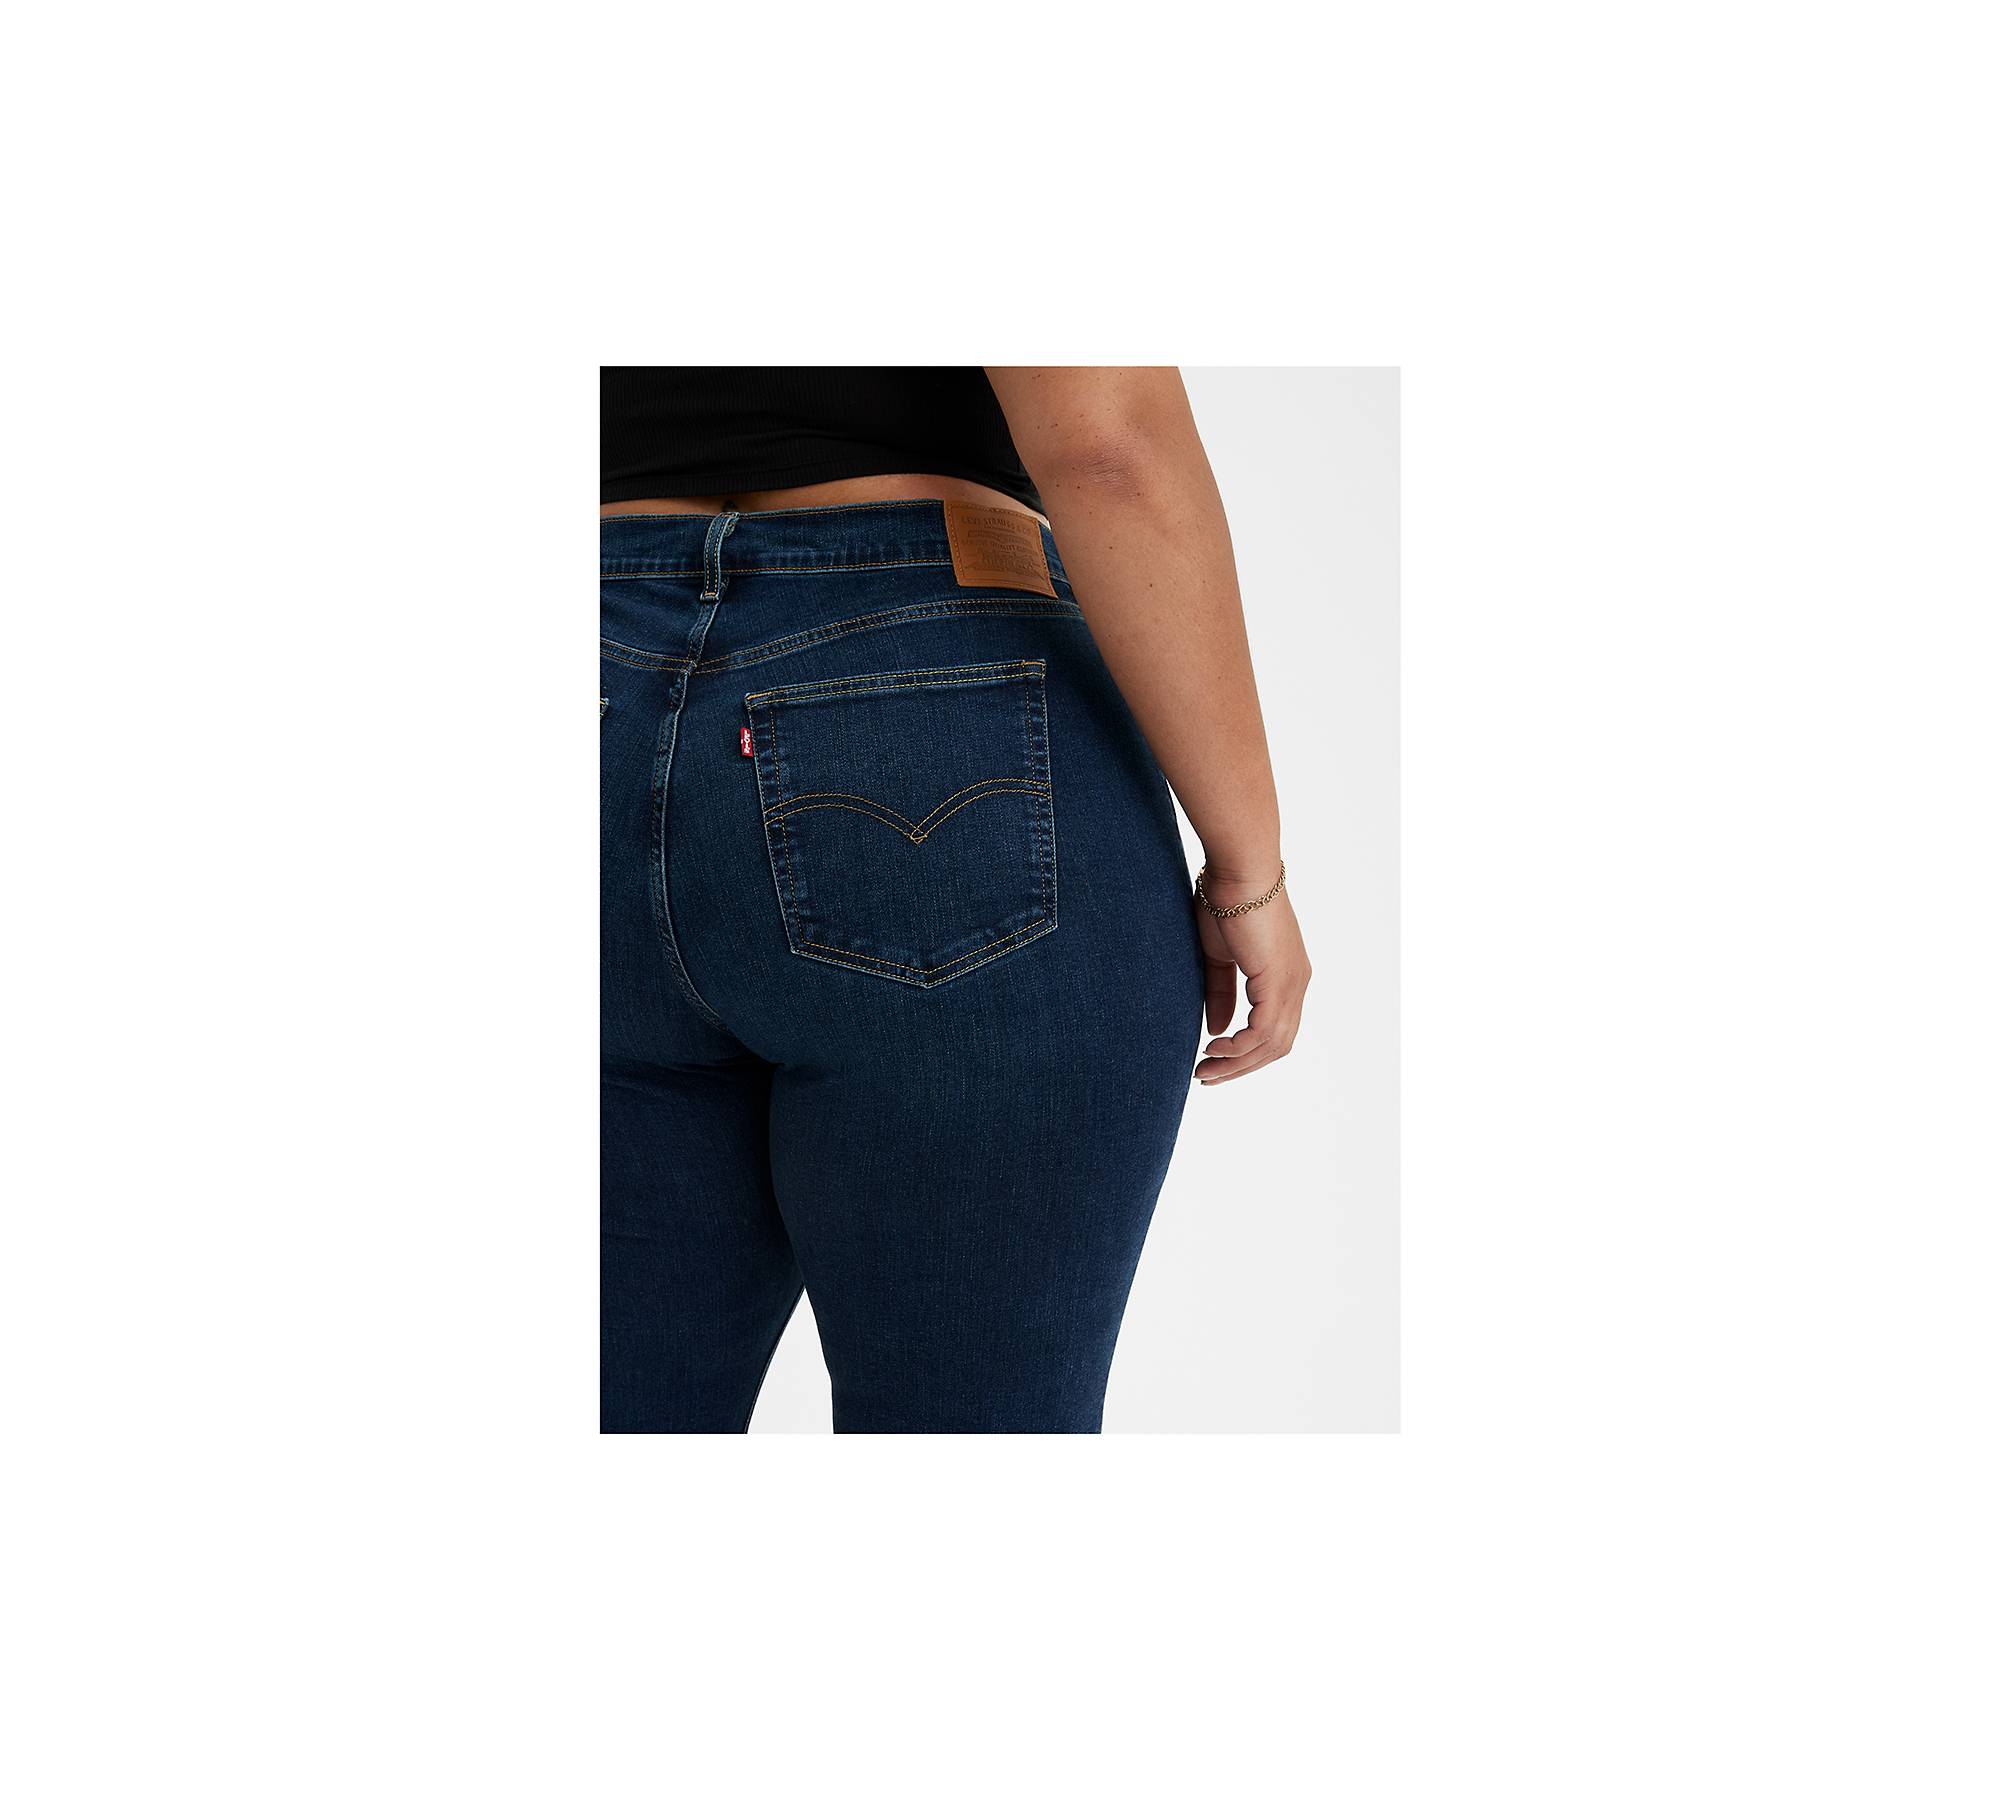 Jeans Acampanados De Talle Alto 726™ (talla Grande) - Azul